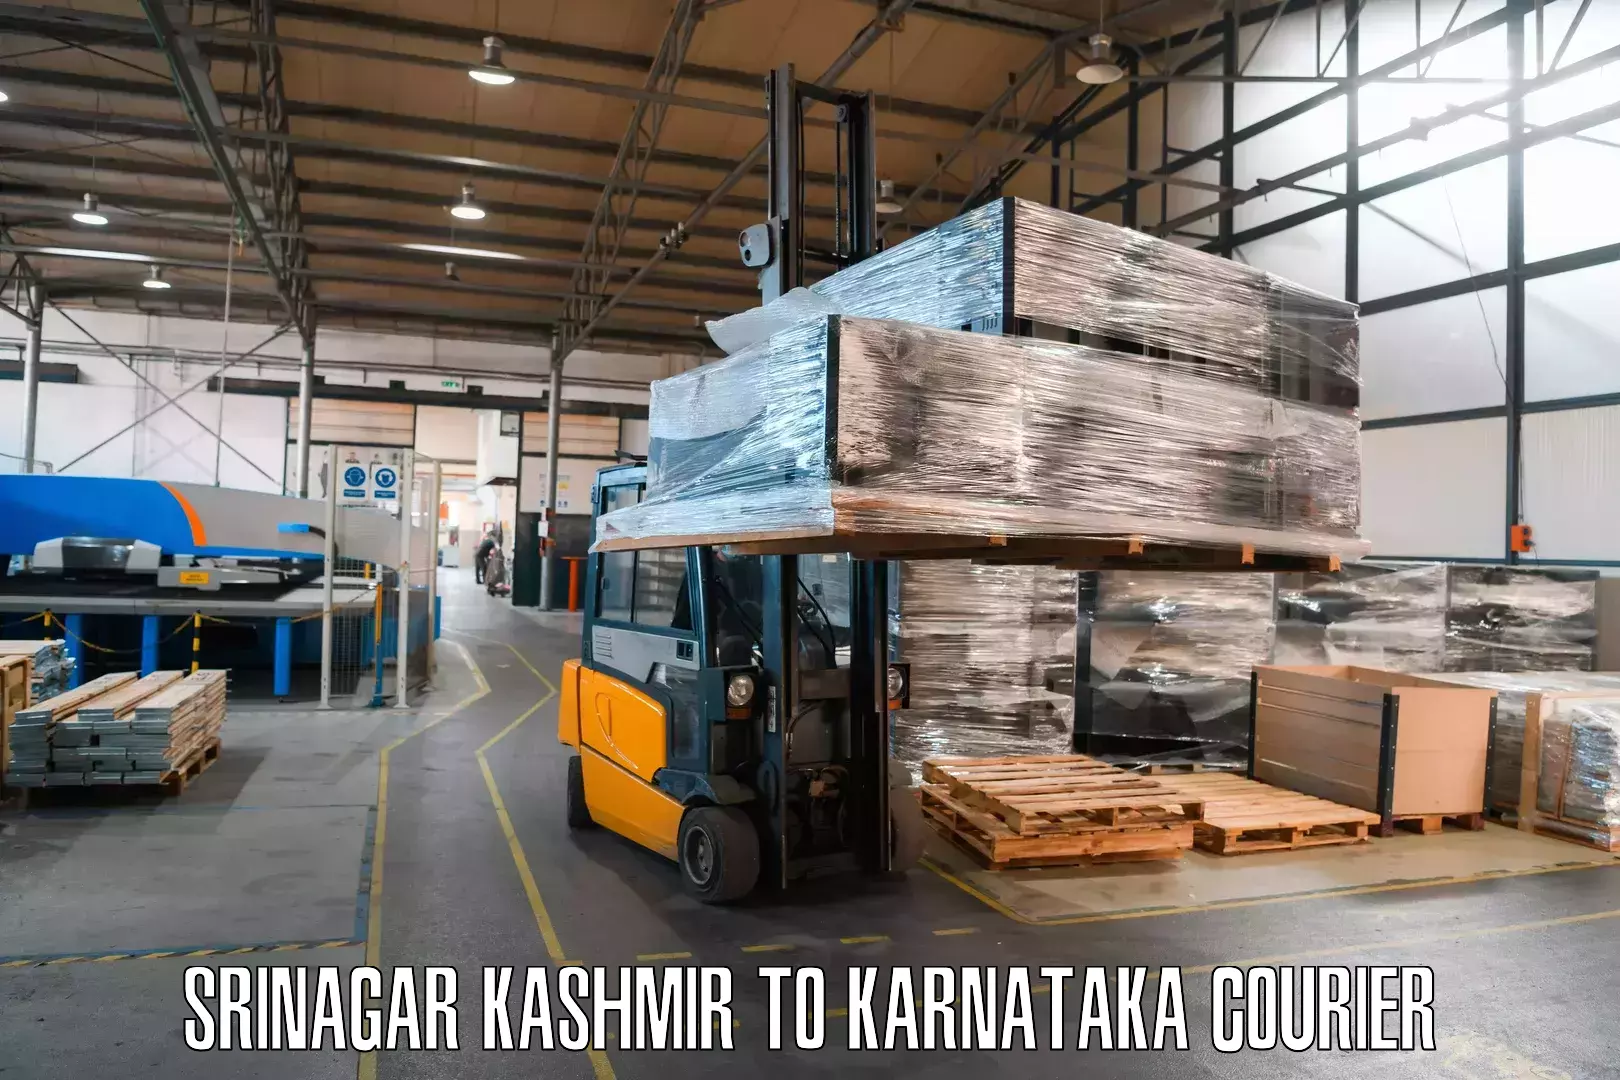 Individual parcel service Srinagar Kashmir to Karnataka